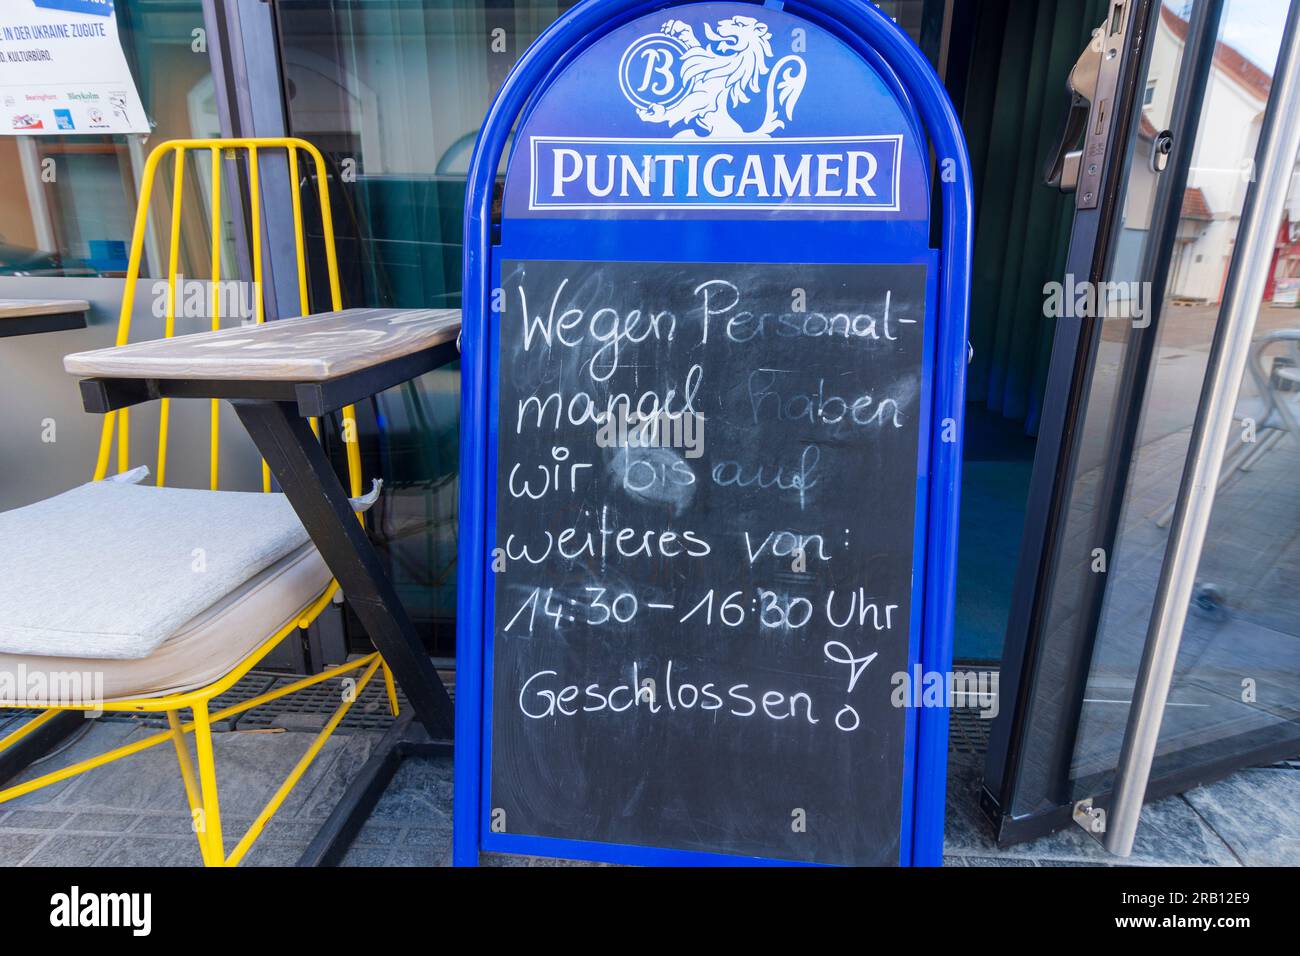 Weiz, sign at restaurant 'Wegen Personalmangel geschlossen' (closed due to lack of staff)in Steirisches Thermenland - Oststeiermark region, Styria, Austria Stock Photo